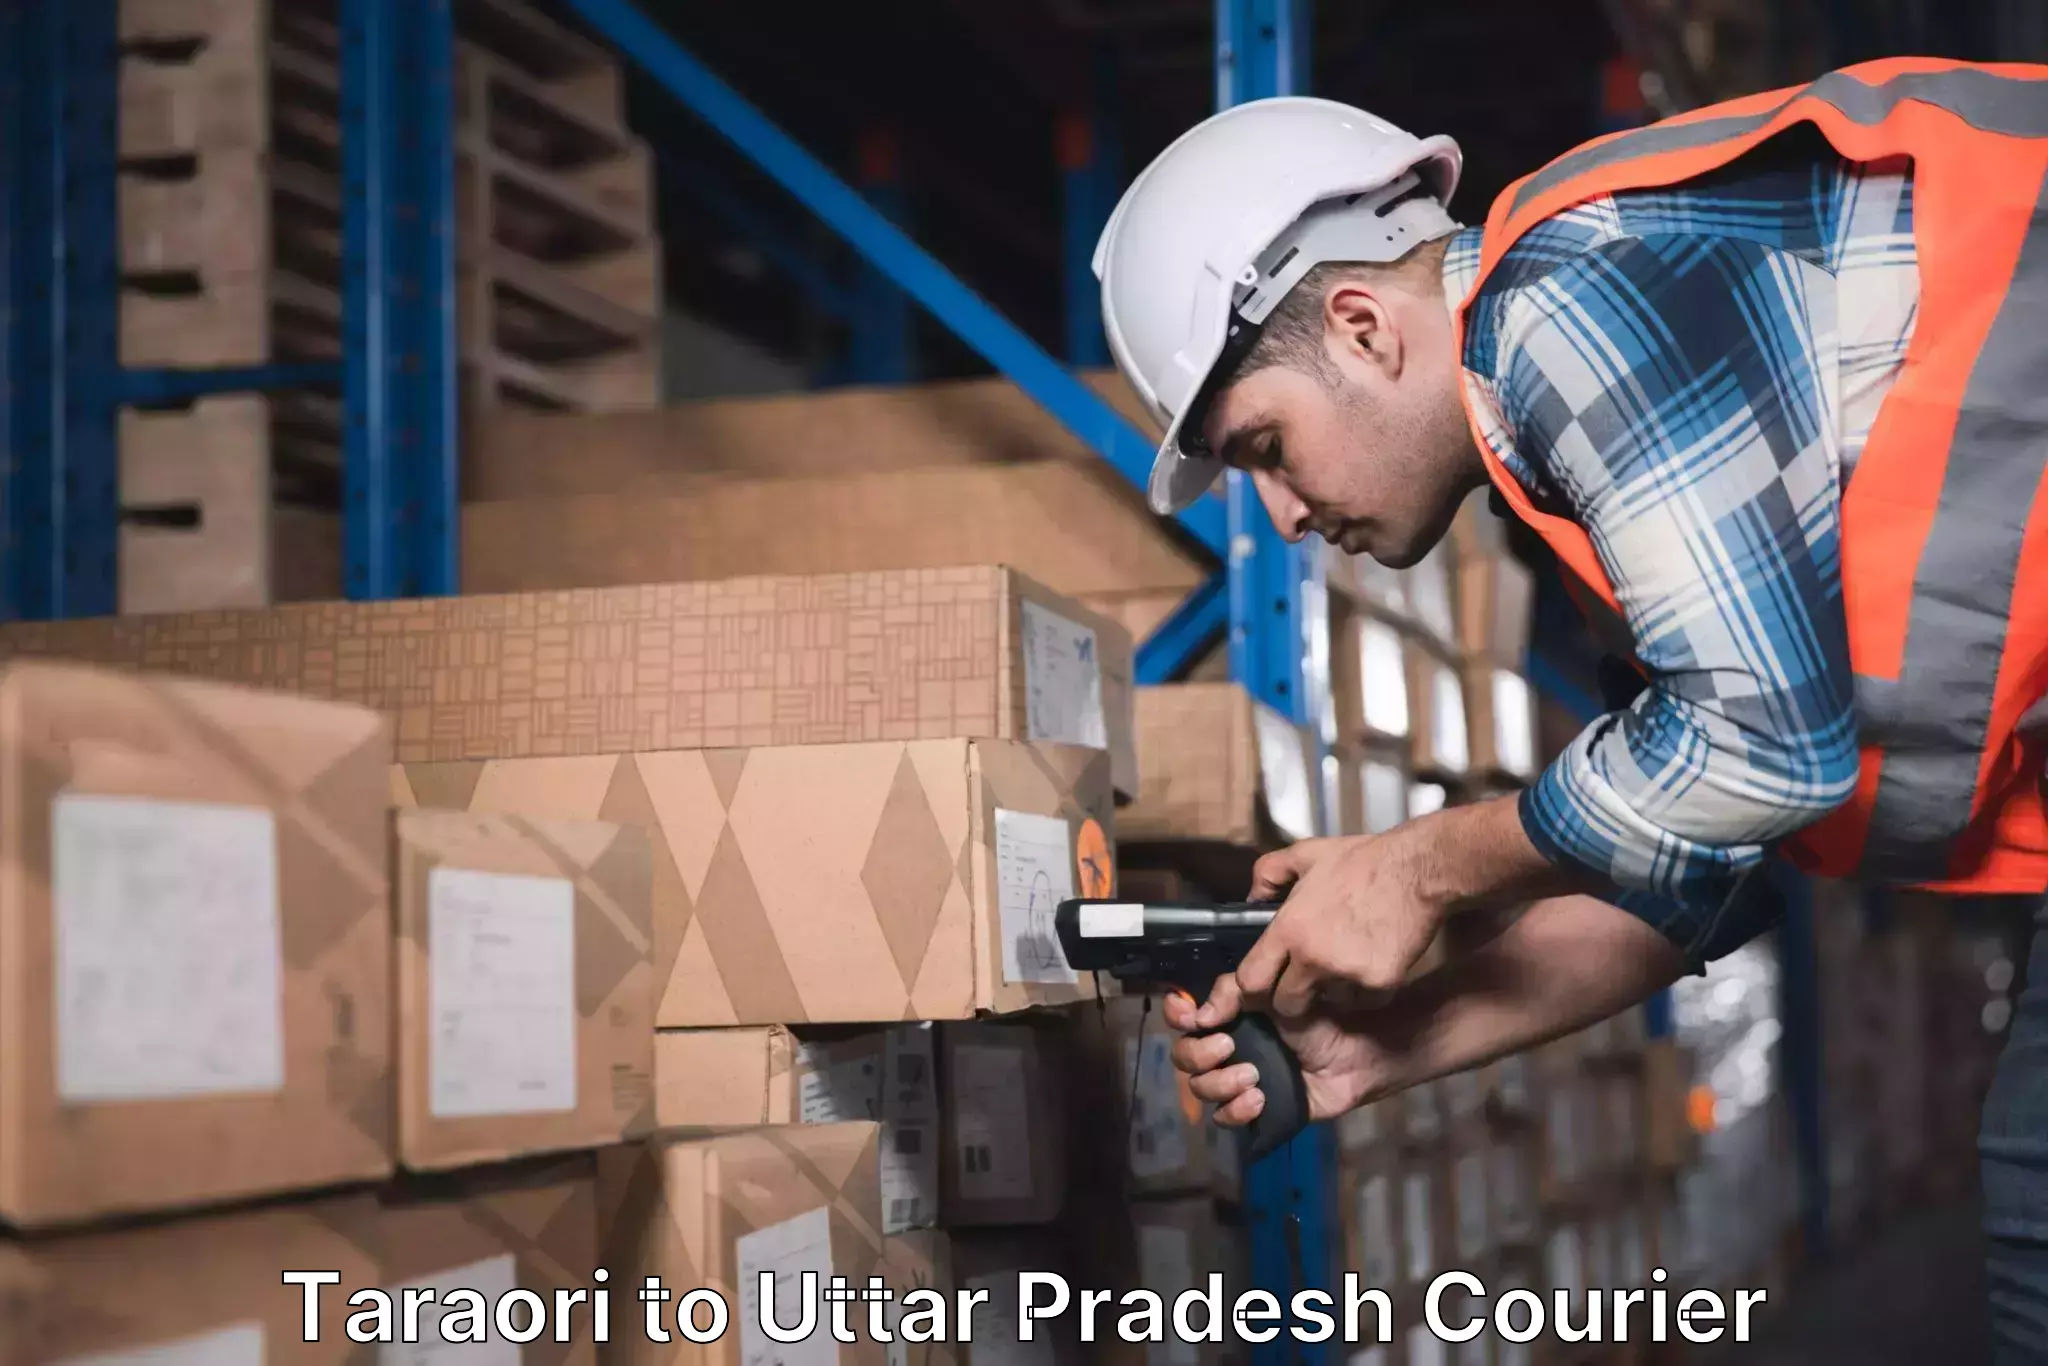 Next-day freight services Taraori to Uttar Pradesh